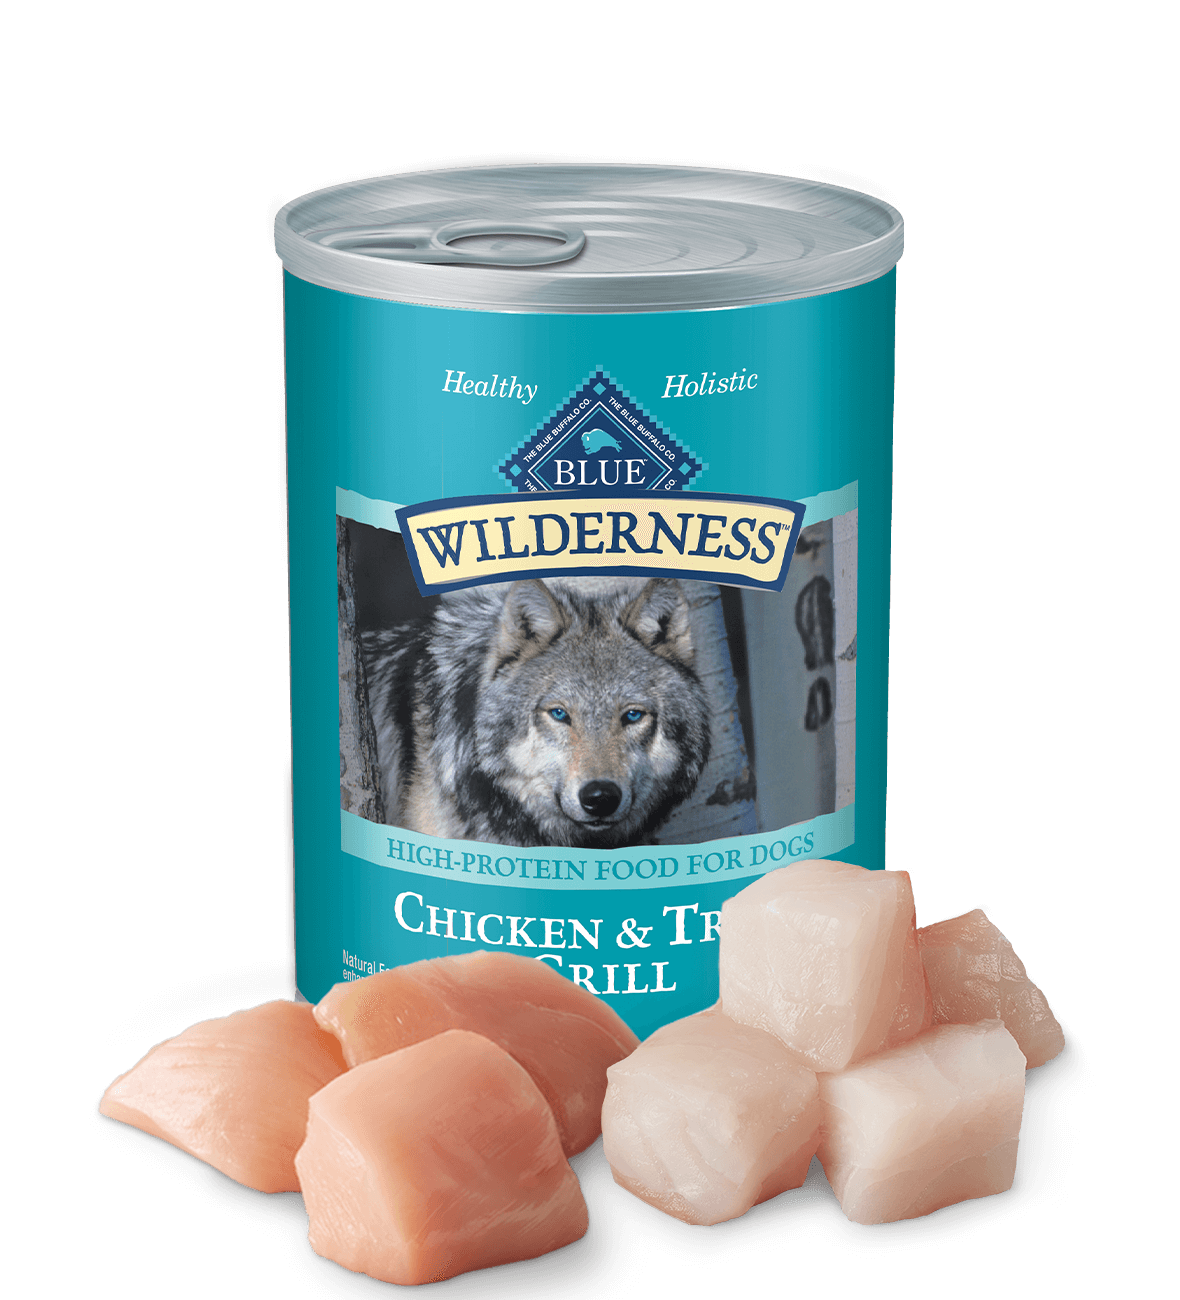 blue wilderness trout & chicken grill dog wet food